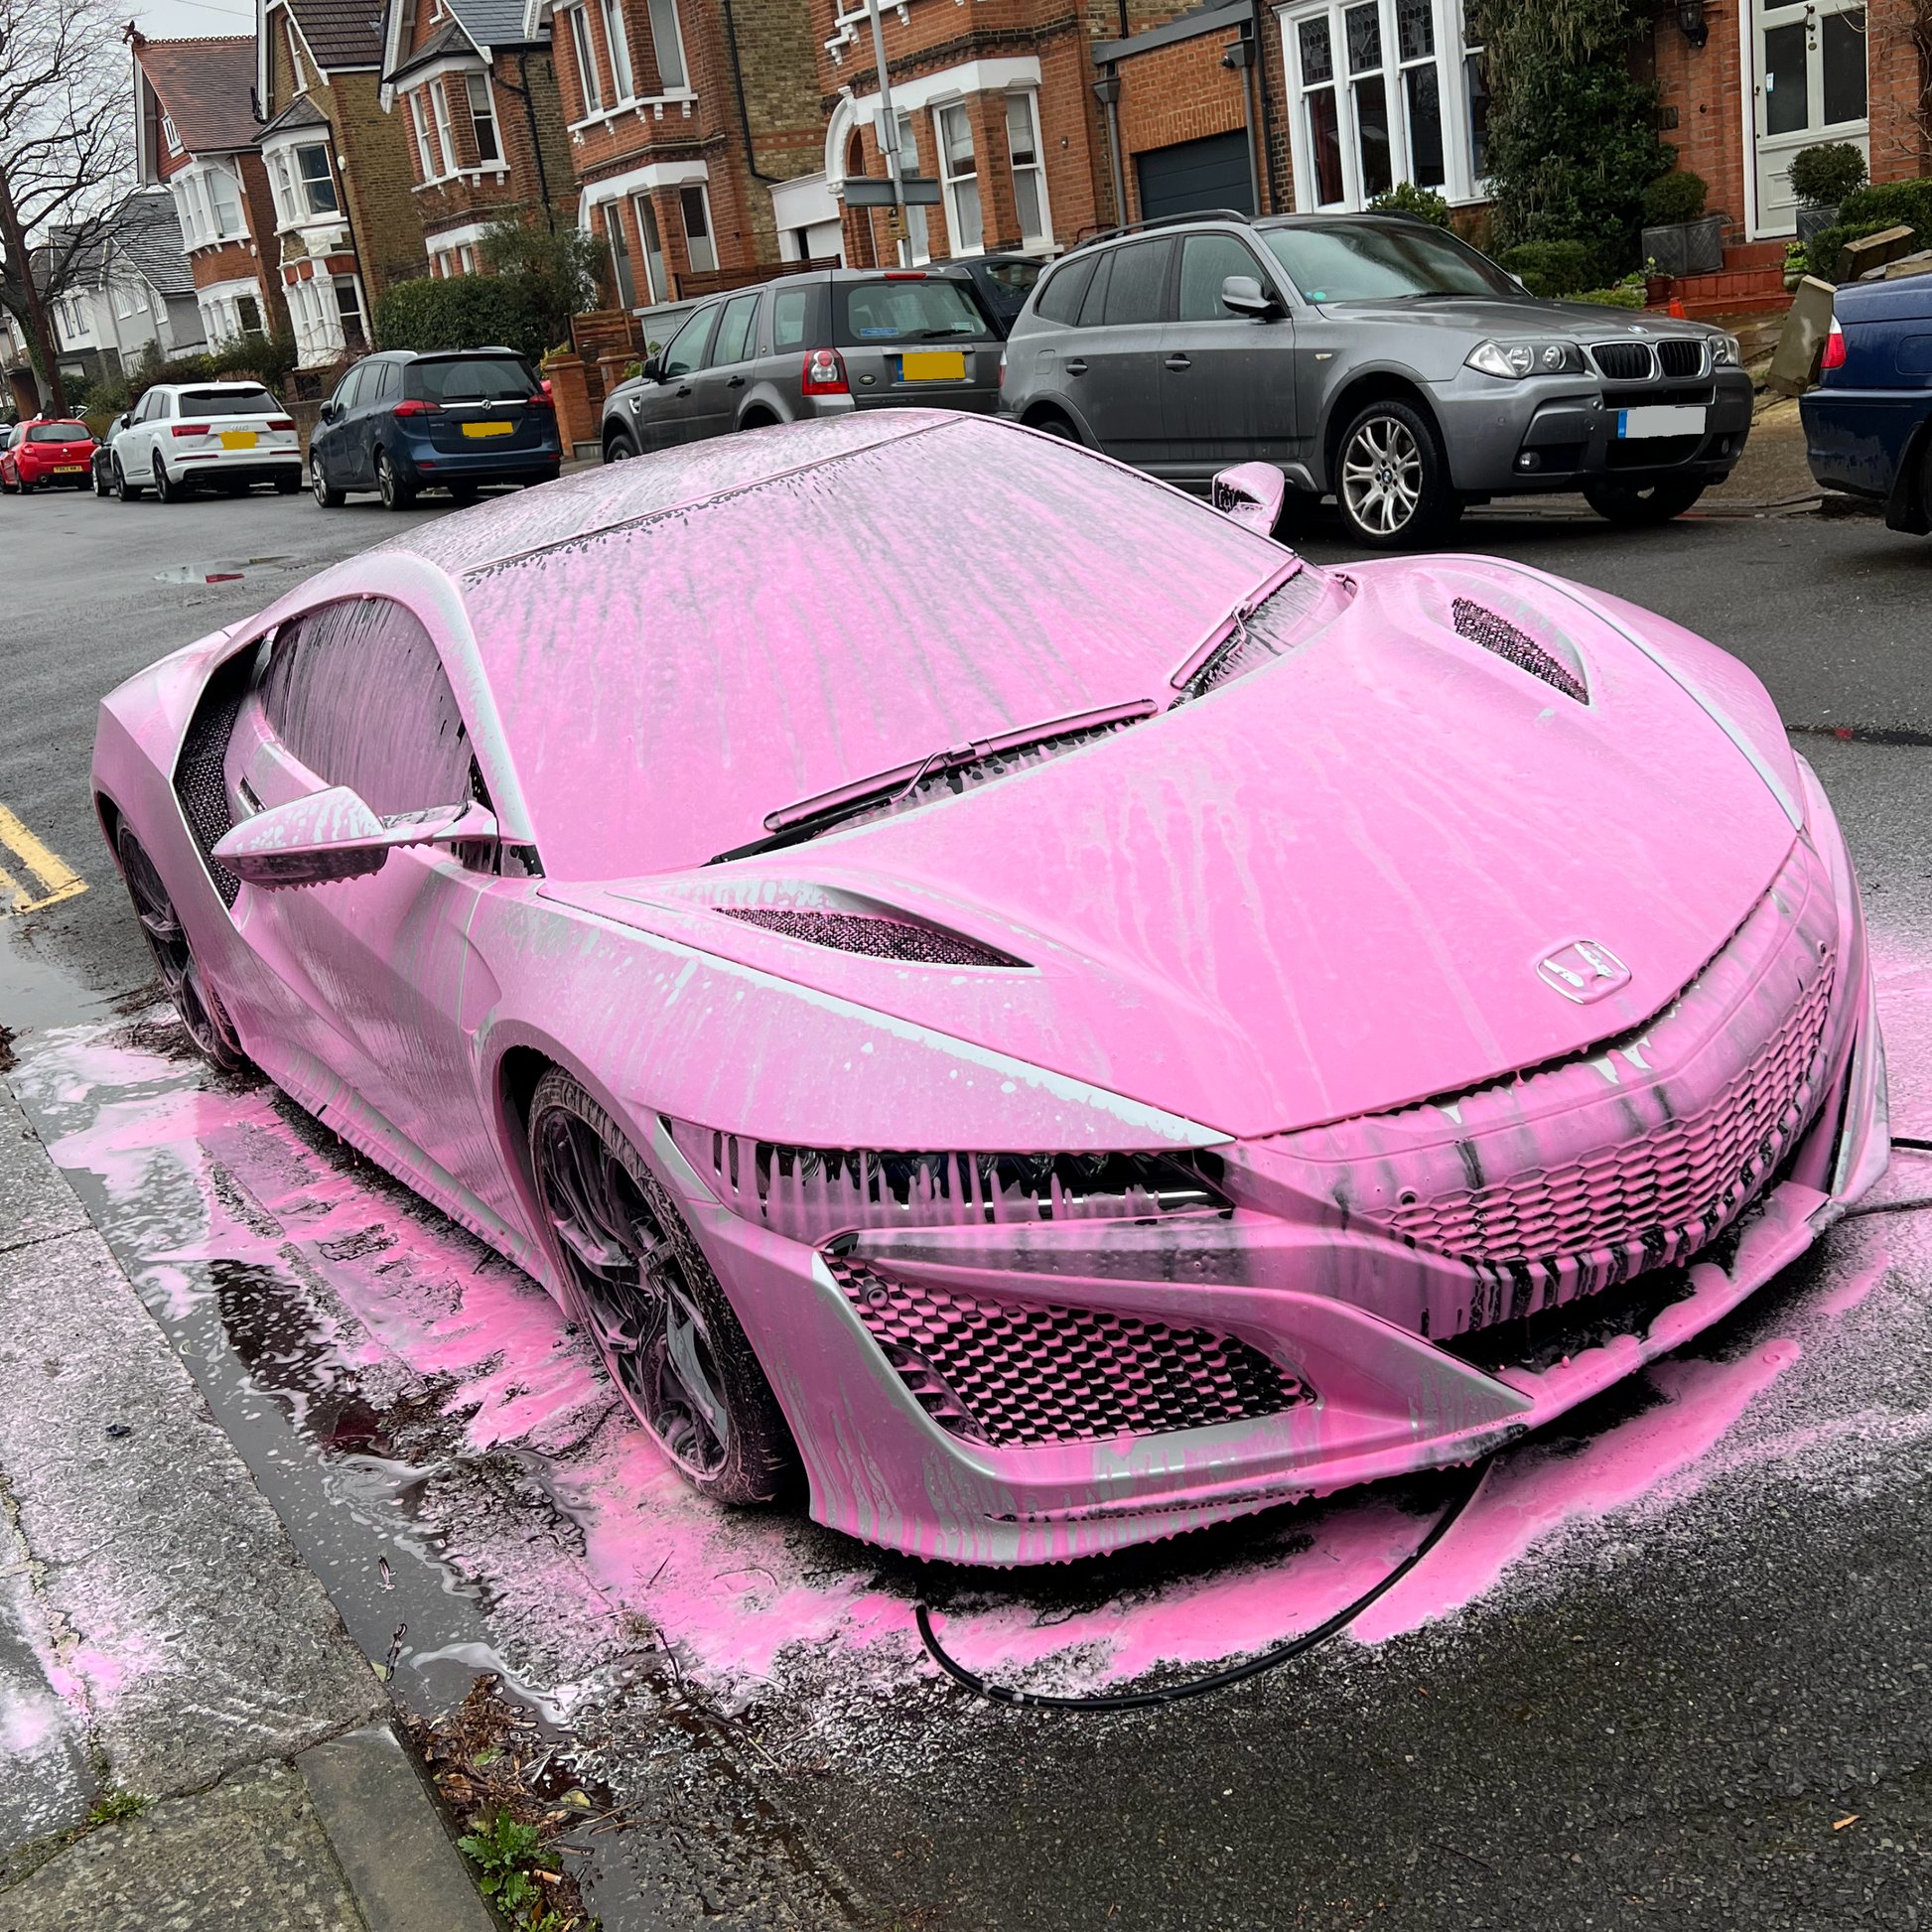 Prewash + Pink Snow Foam 💯#fyp #asmr #cardetailing #satisfying #cardi, foam cannon car wash